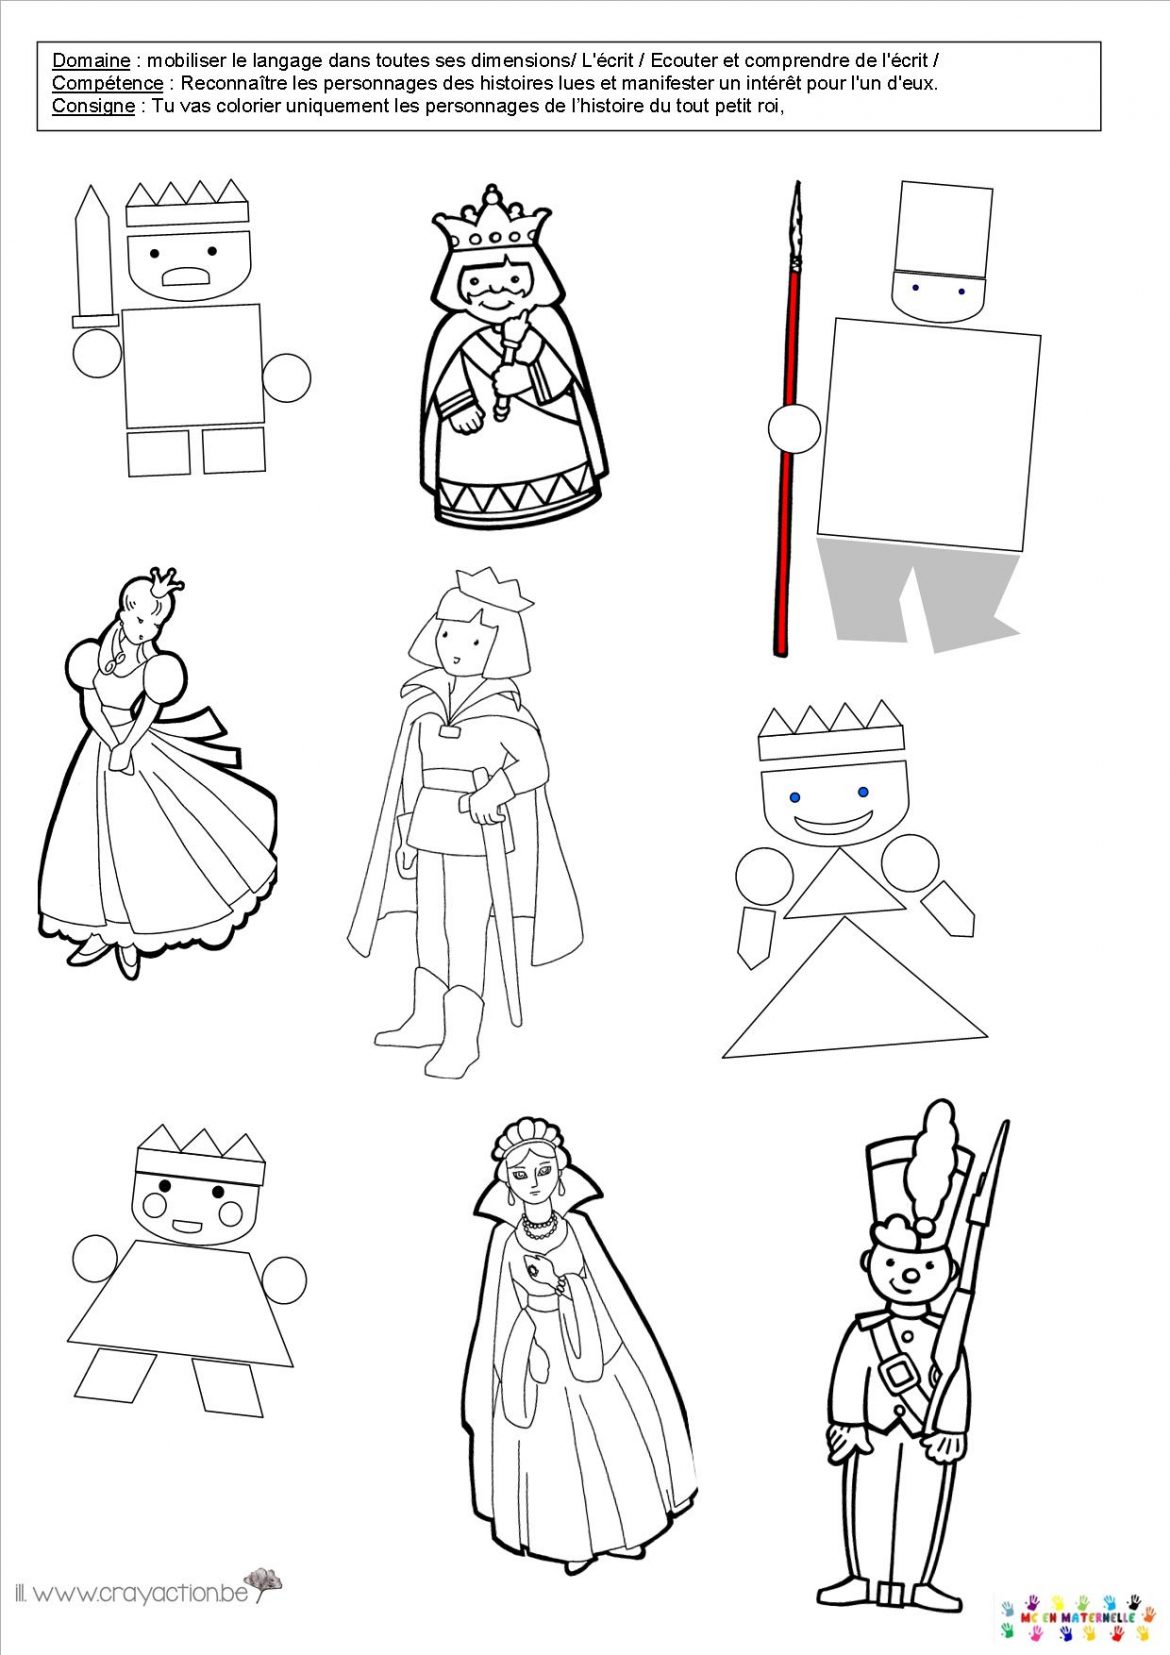 Reconna tre les personnages de l histoire et les colorier coloriage le tout petit roi personnage Illustrations DVD Marianne 2014 – de